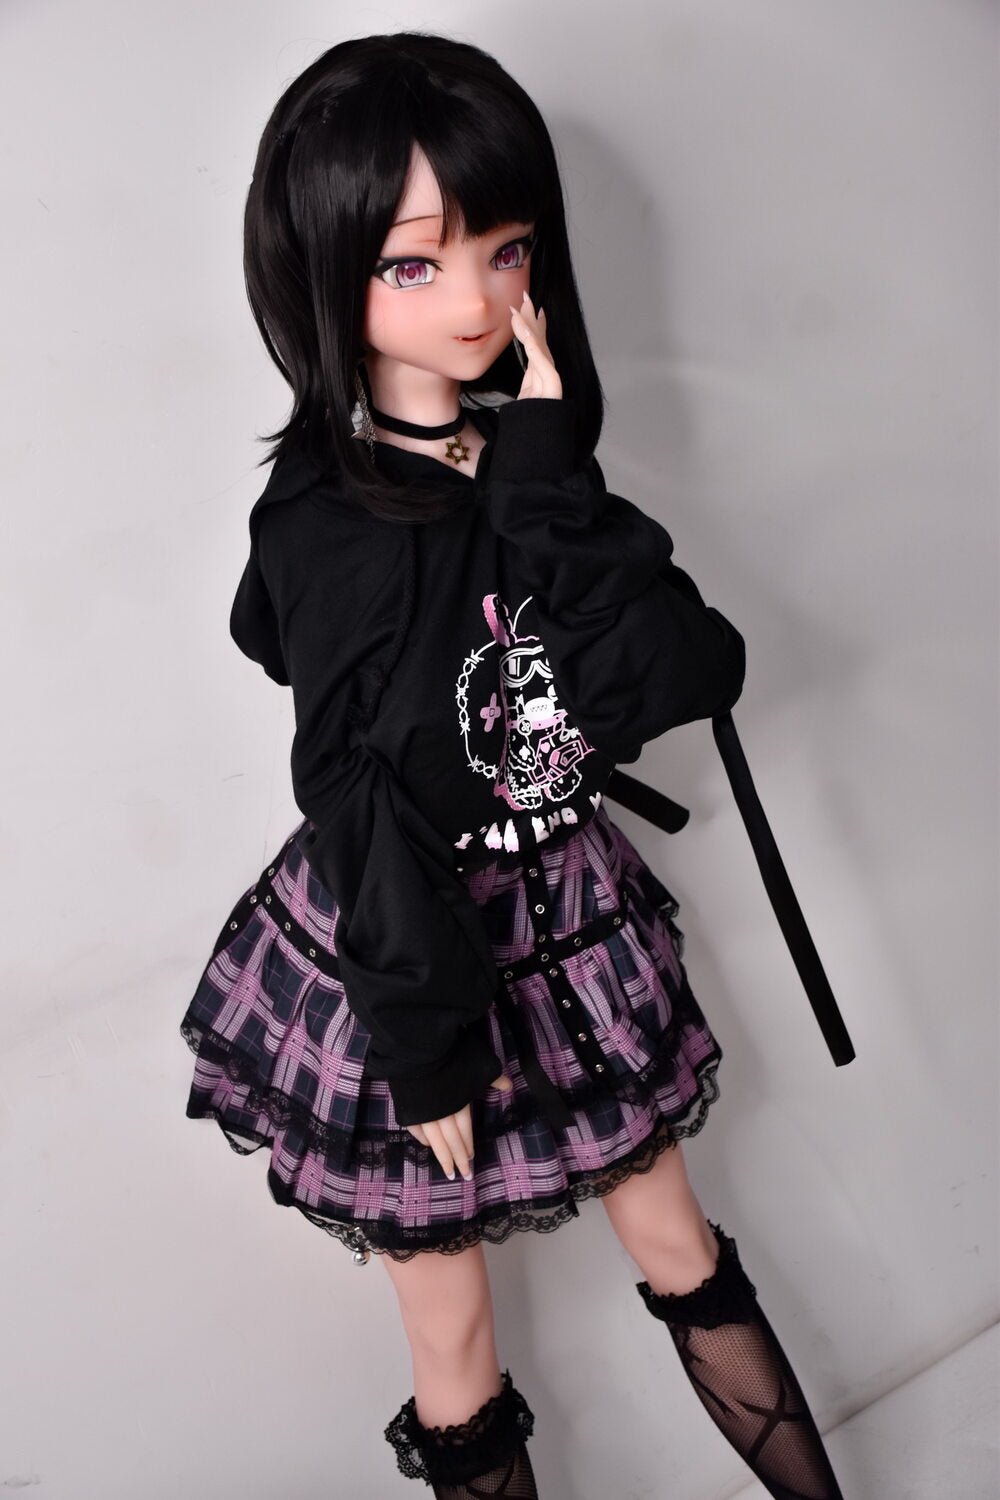 Elsababe 148cm/4ft10 Silicone Sex Doll – Matsuzaka Erina - Dolls inlove